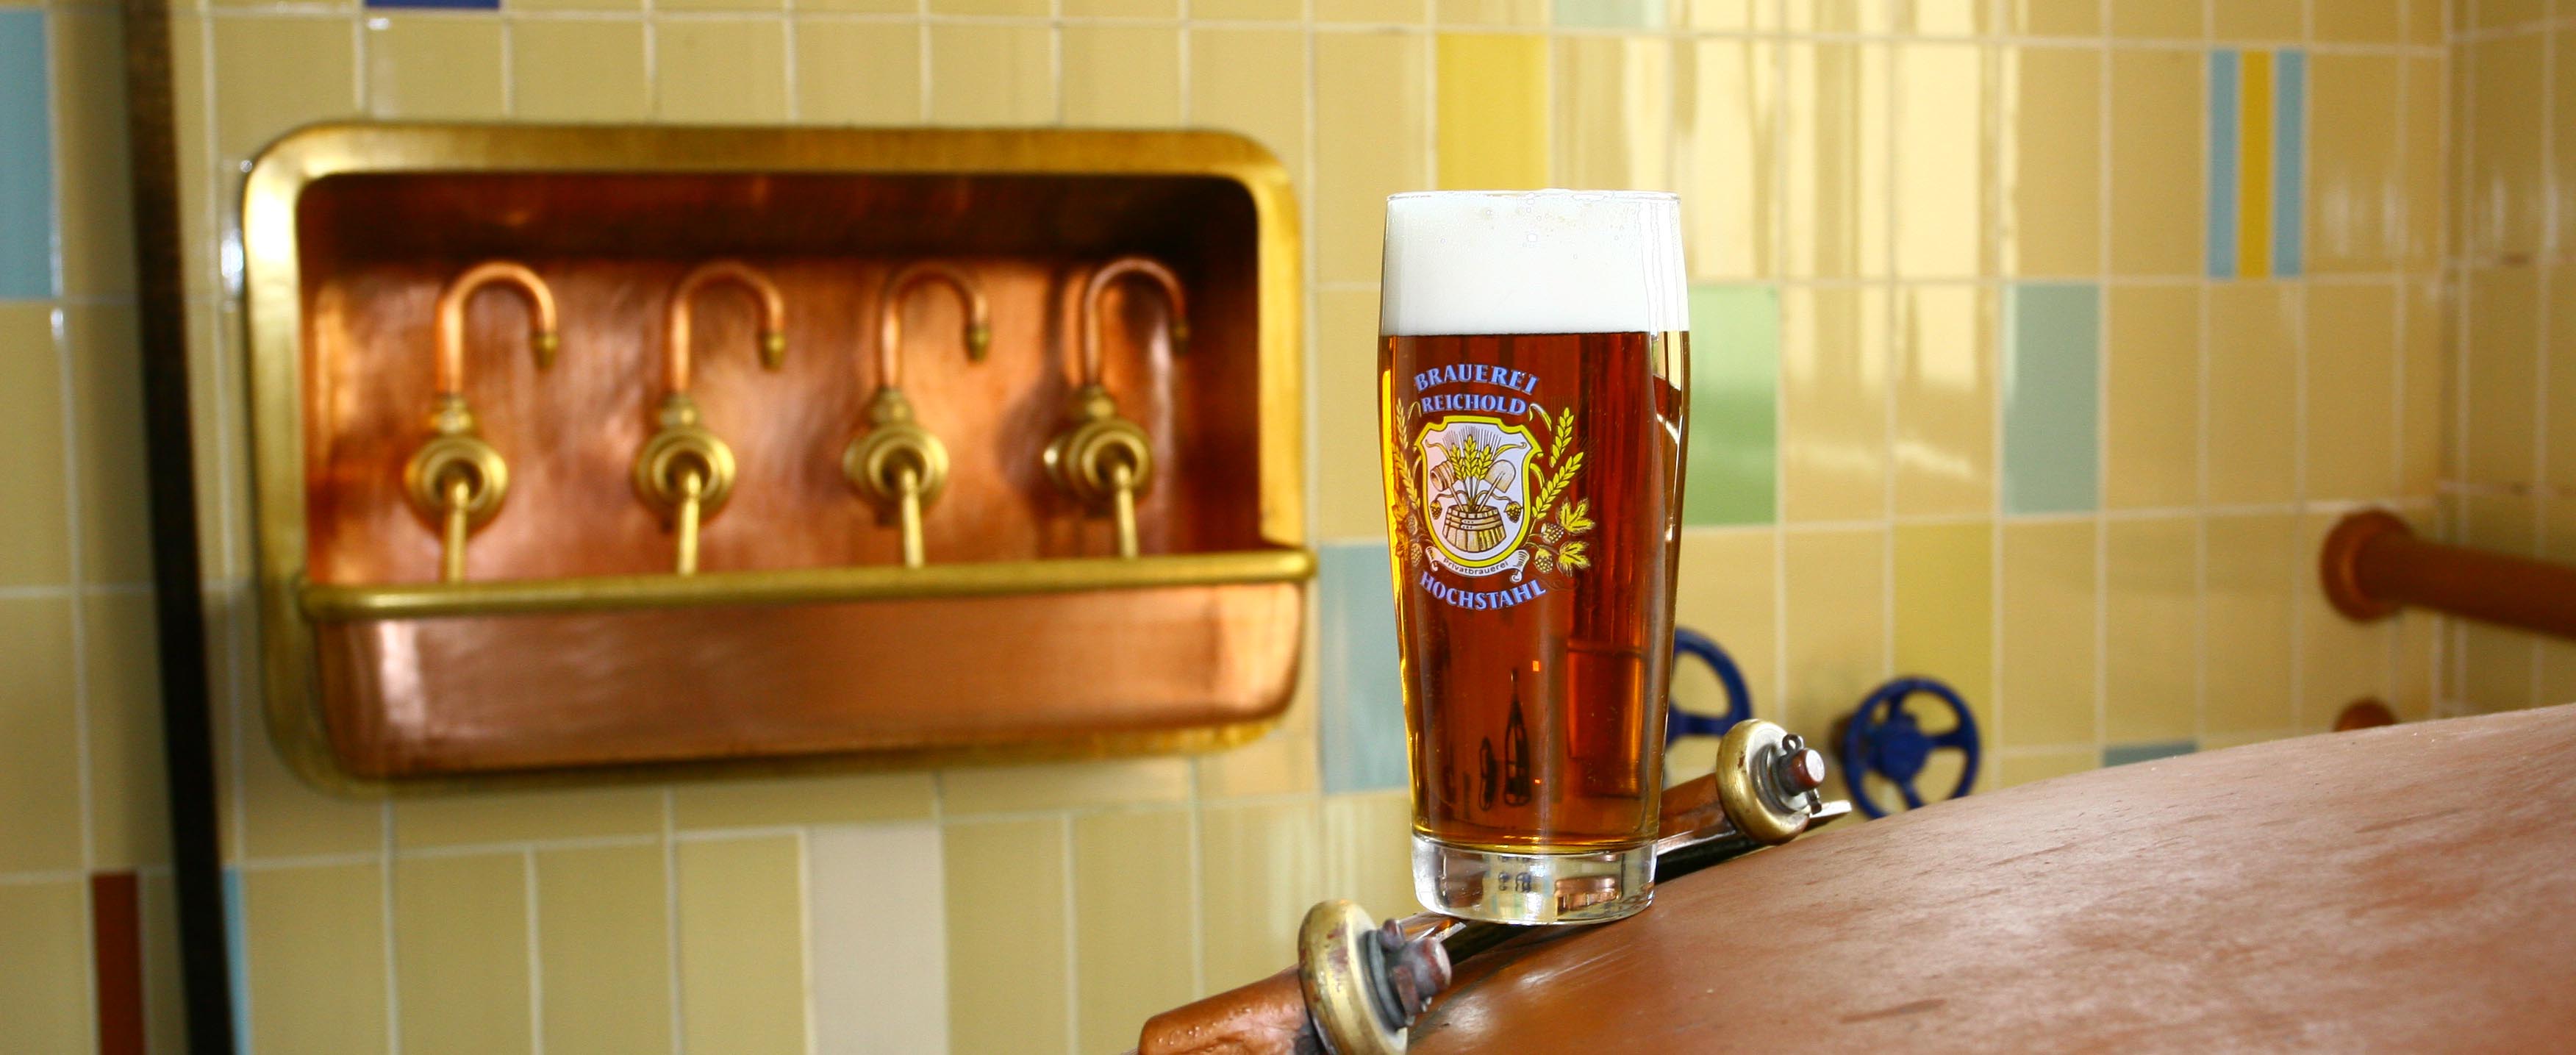  Brauerei-Reichold.jpg